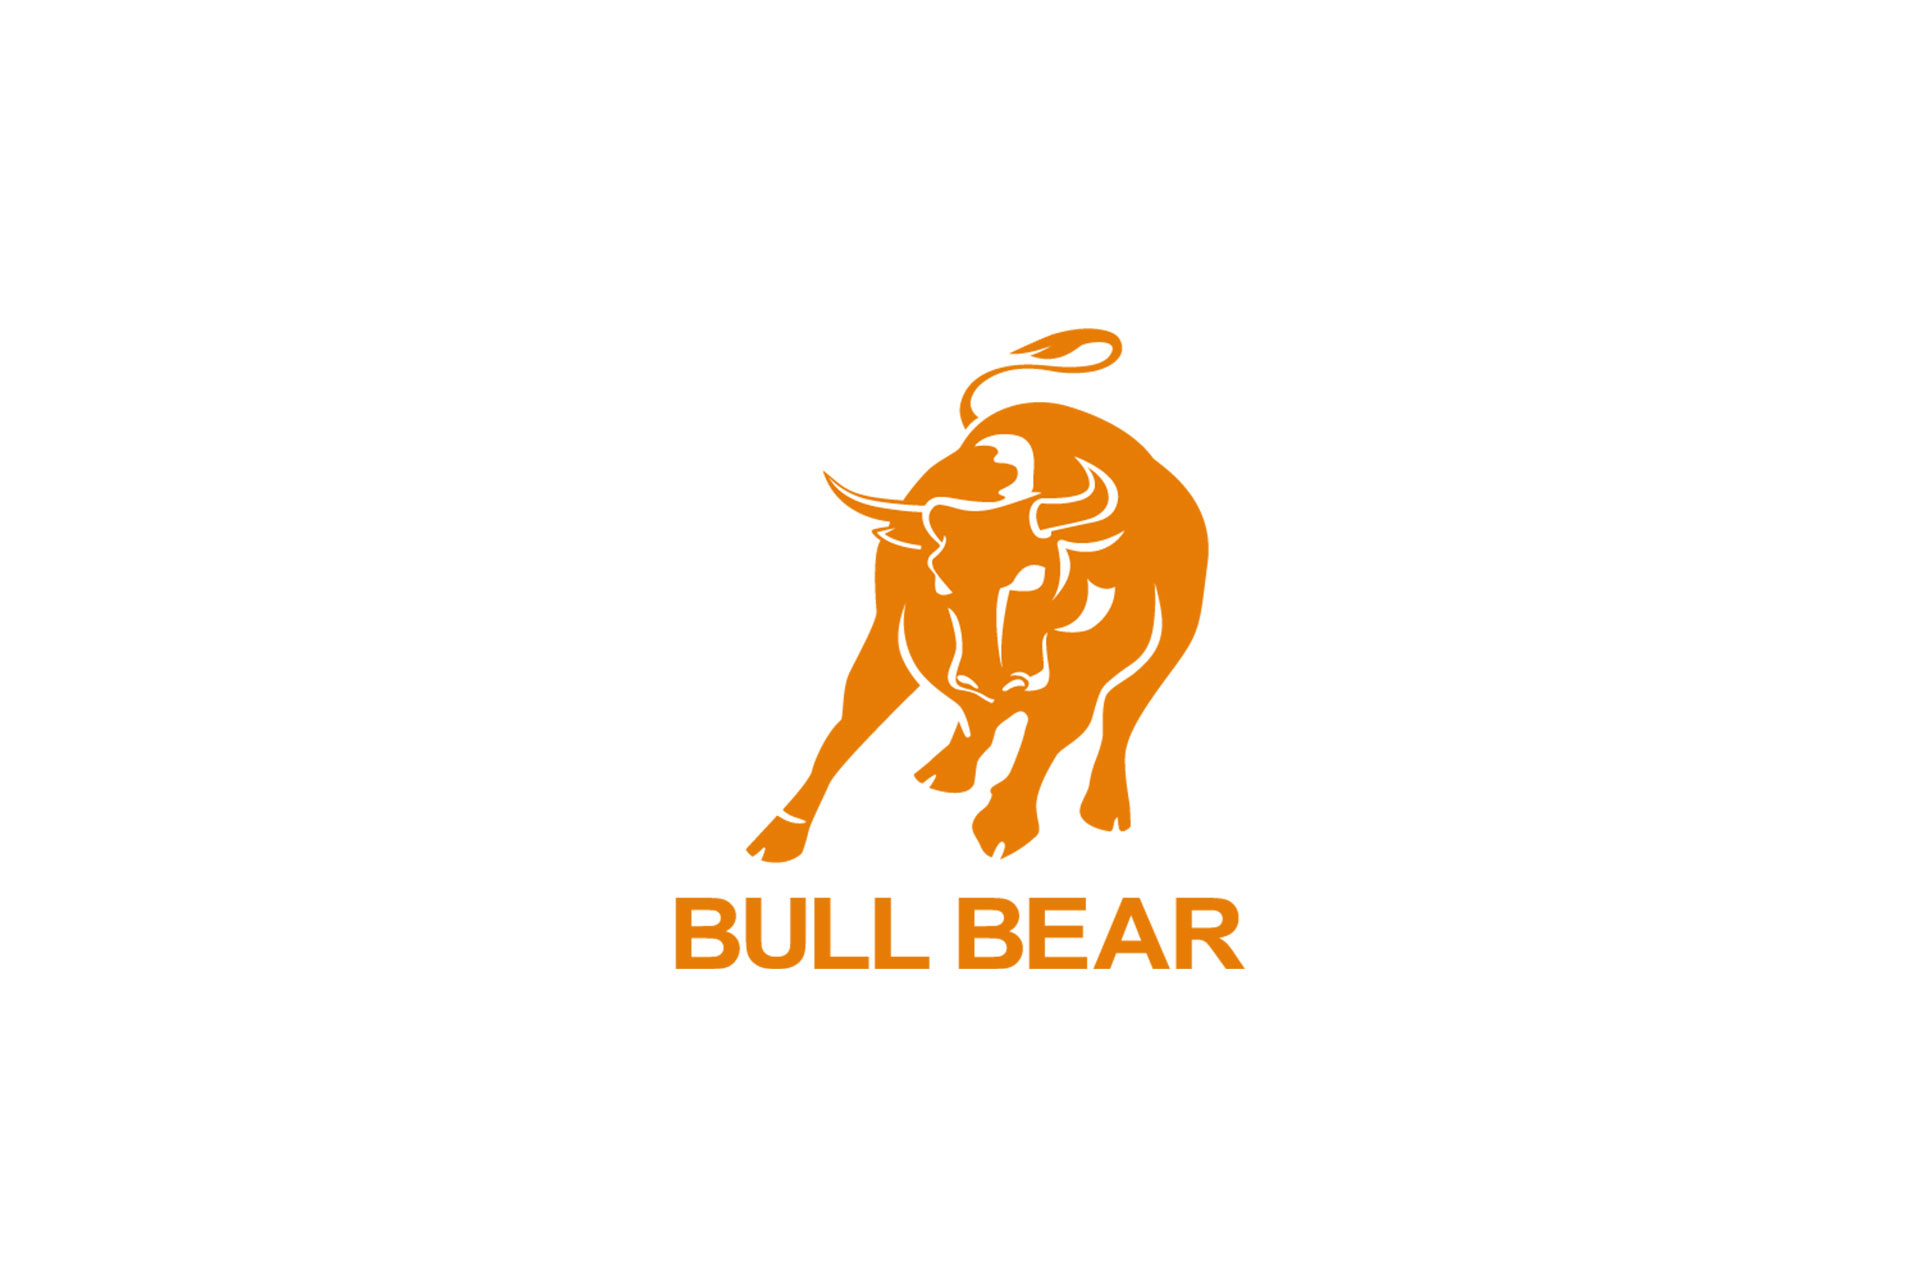 Bull bear logo